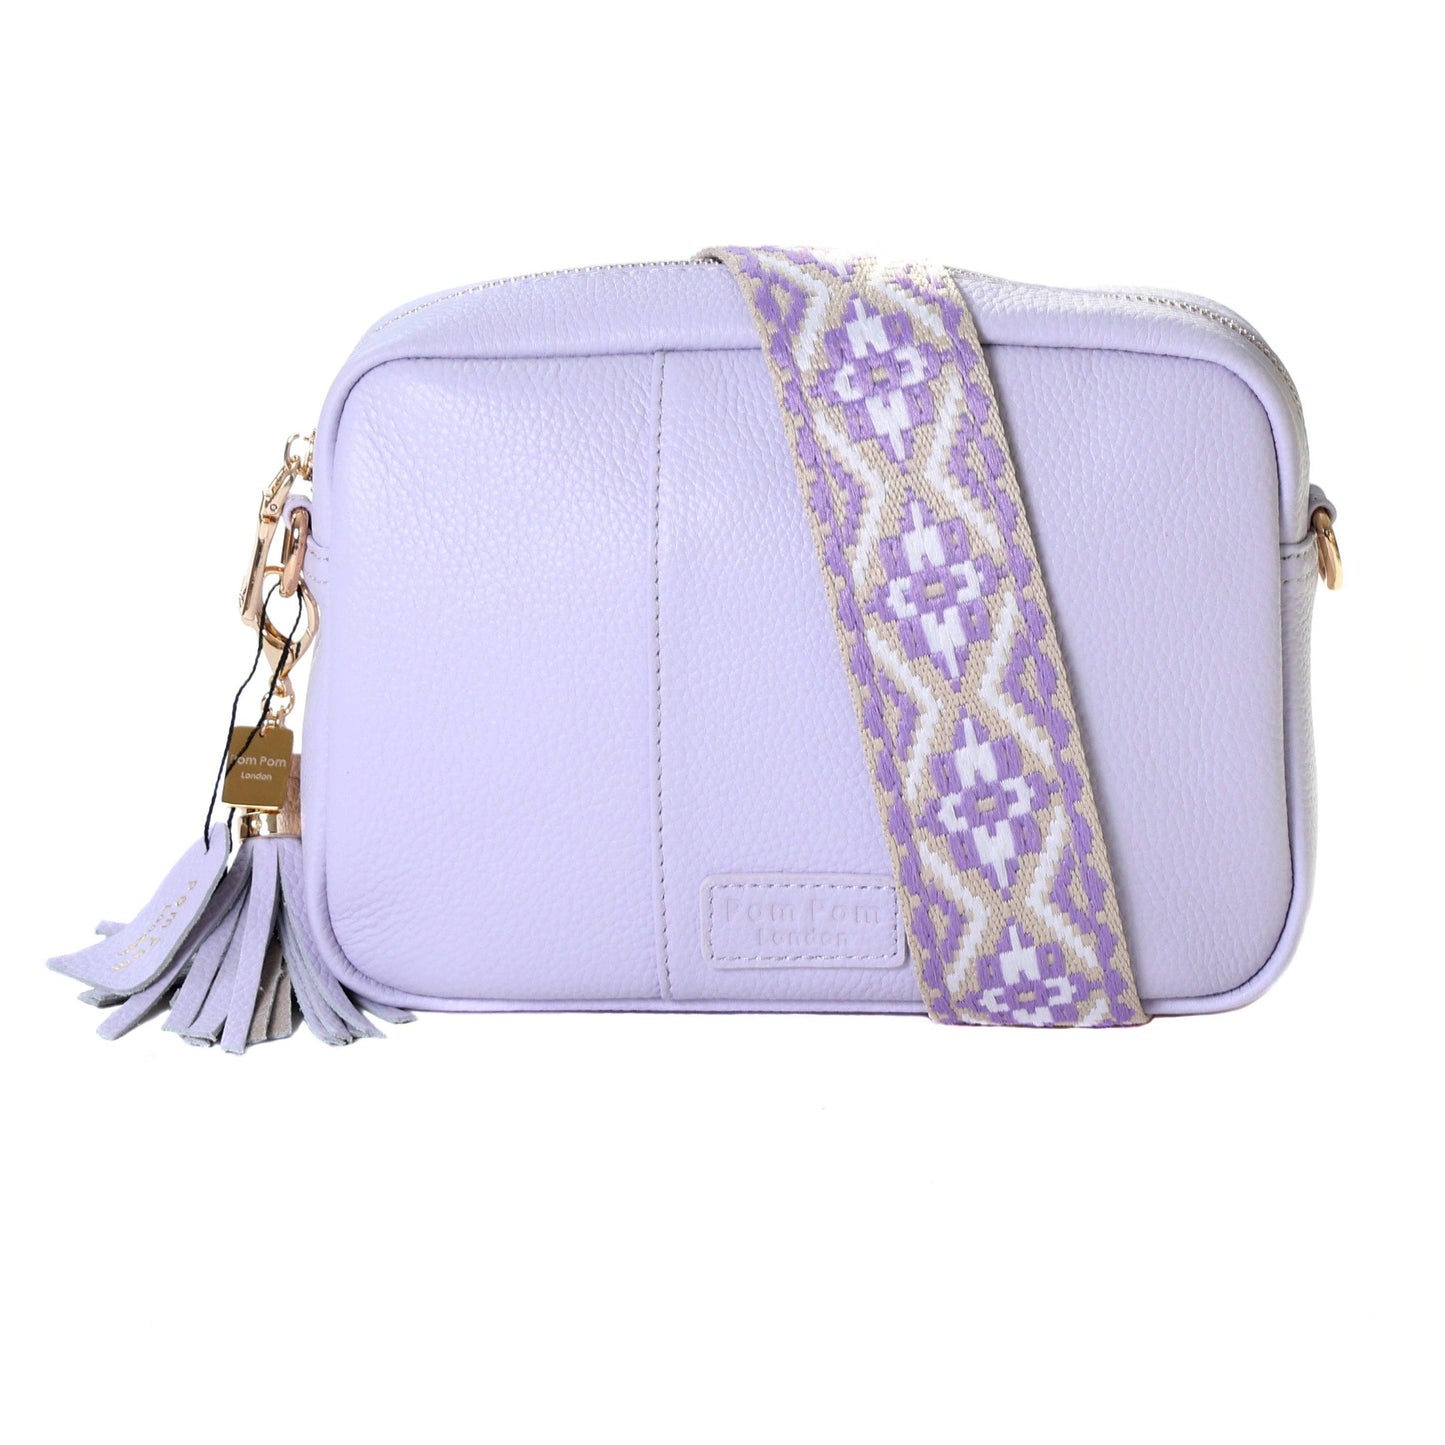 Pom Pom London City Bag Lilac & Strap Lilac Tapestry